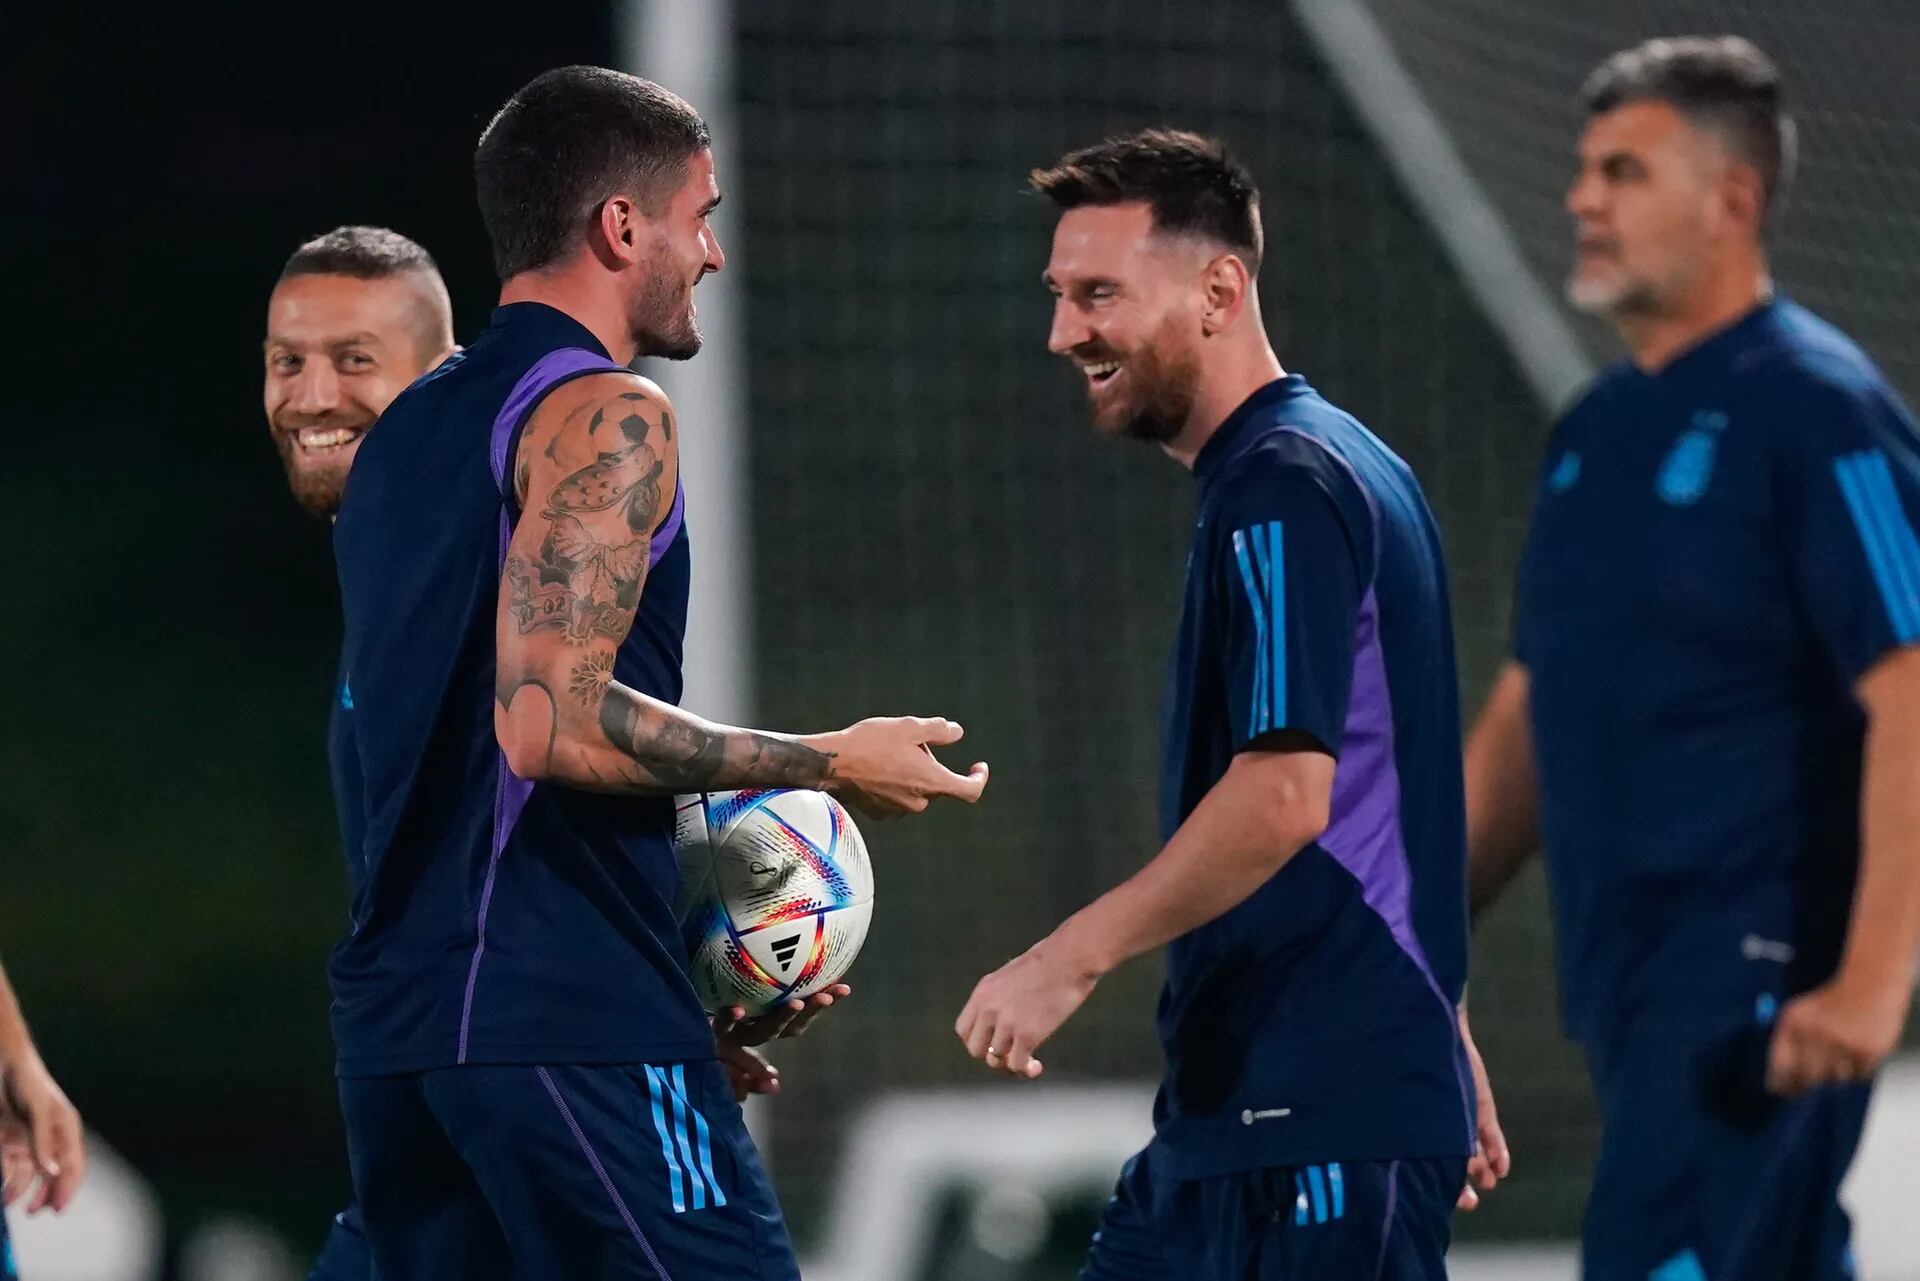 Entrenamiento de la selección argentina en la Universidad de Qatar, con Lionel Messi sonriente antes del partido ante Australia